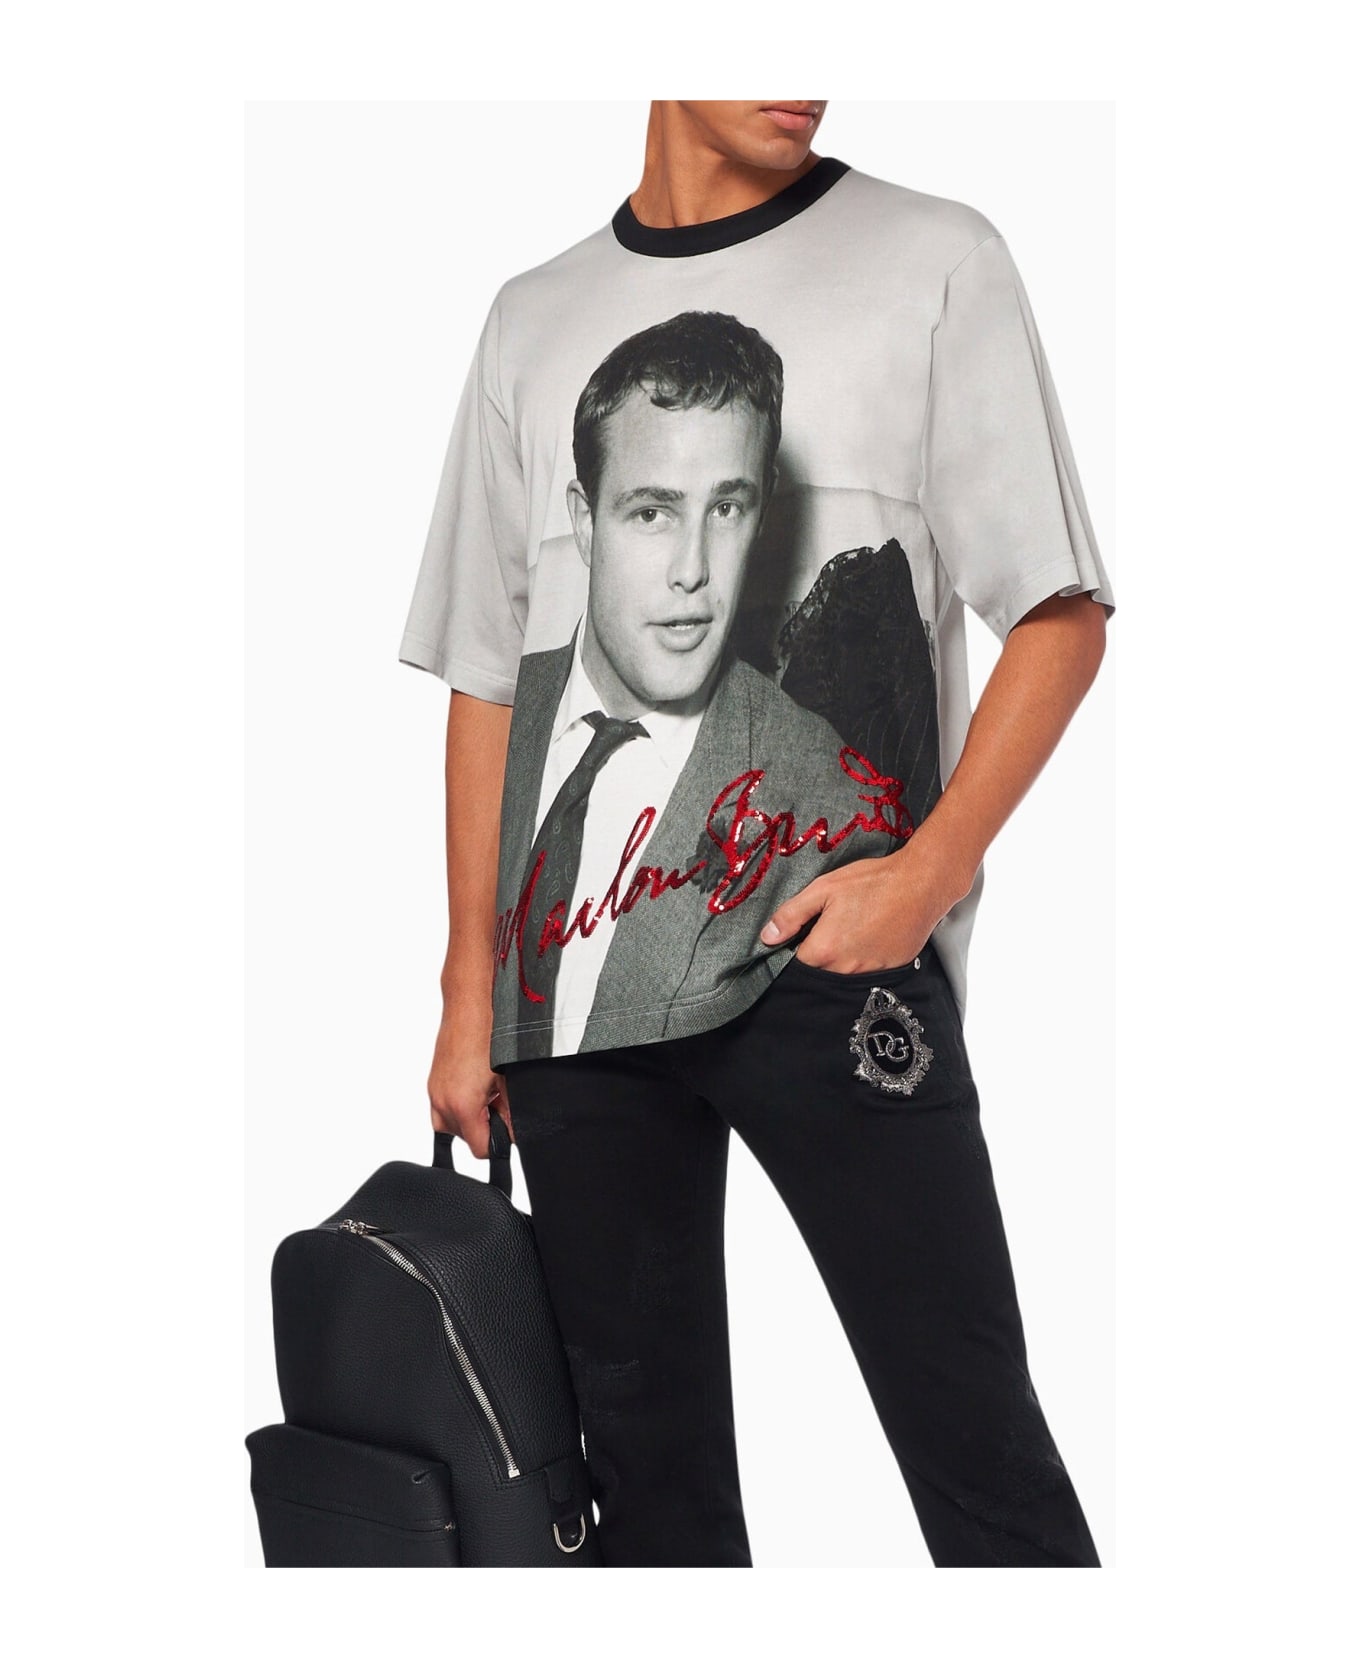 Dolce & Gabbana Marlon Brando T-shirt - Black